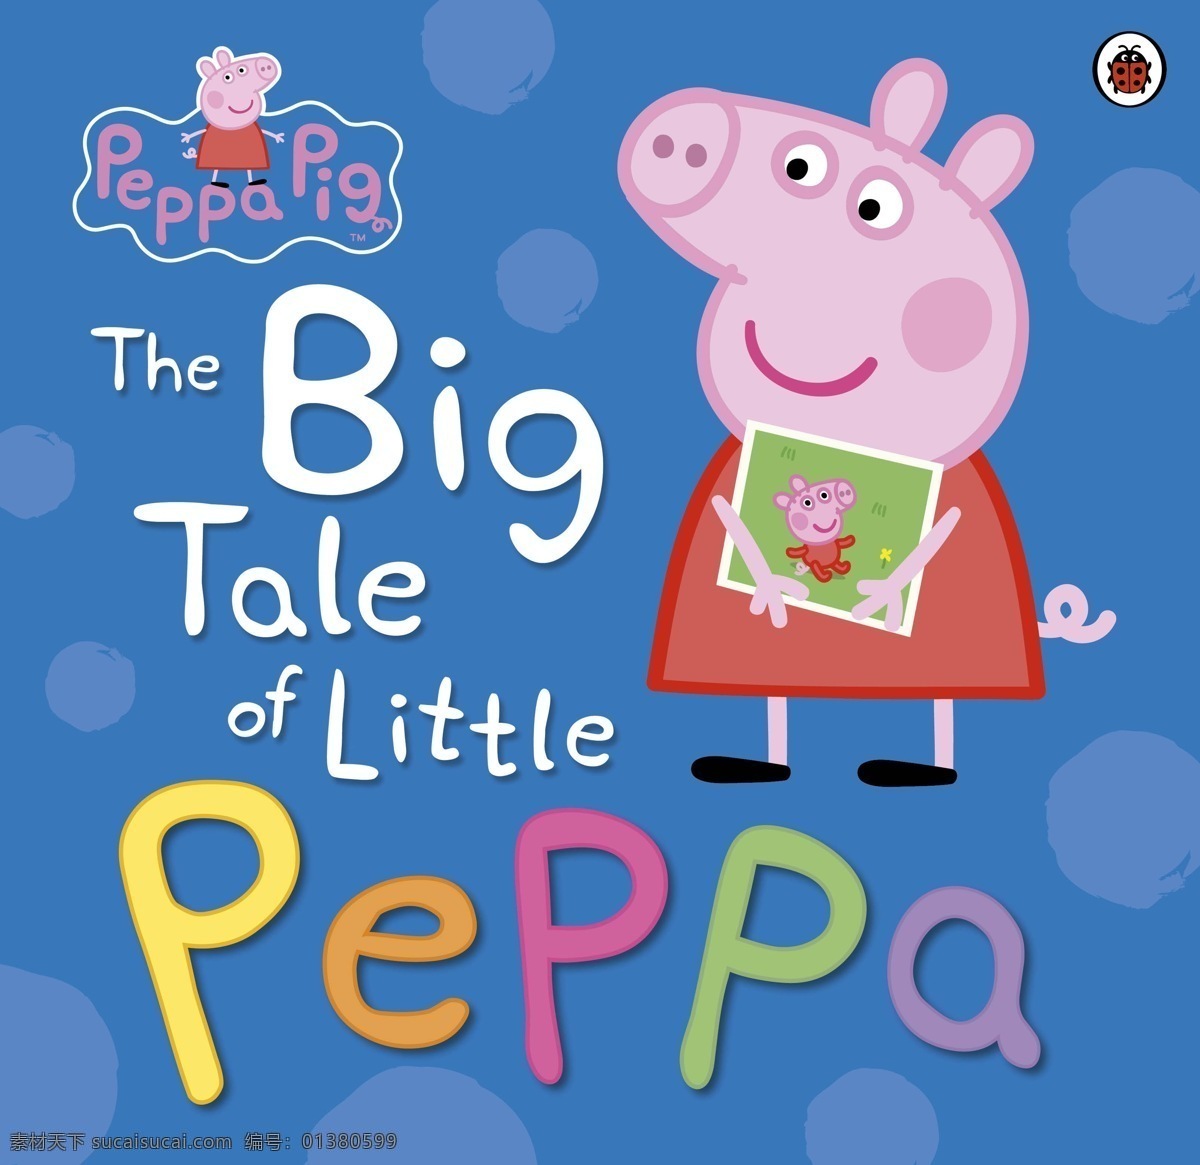 peppa pig 可爱 卡通 粉红猪小妹 幼儿 动漫动画 佩佩猪